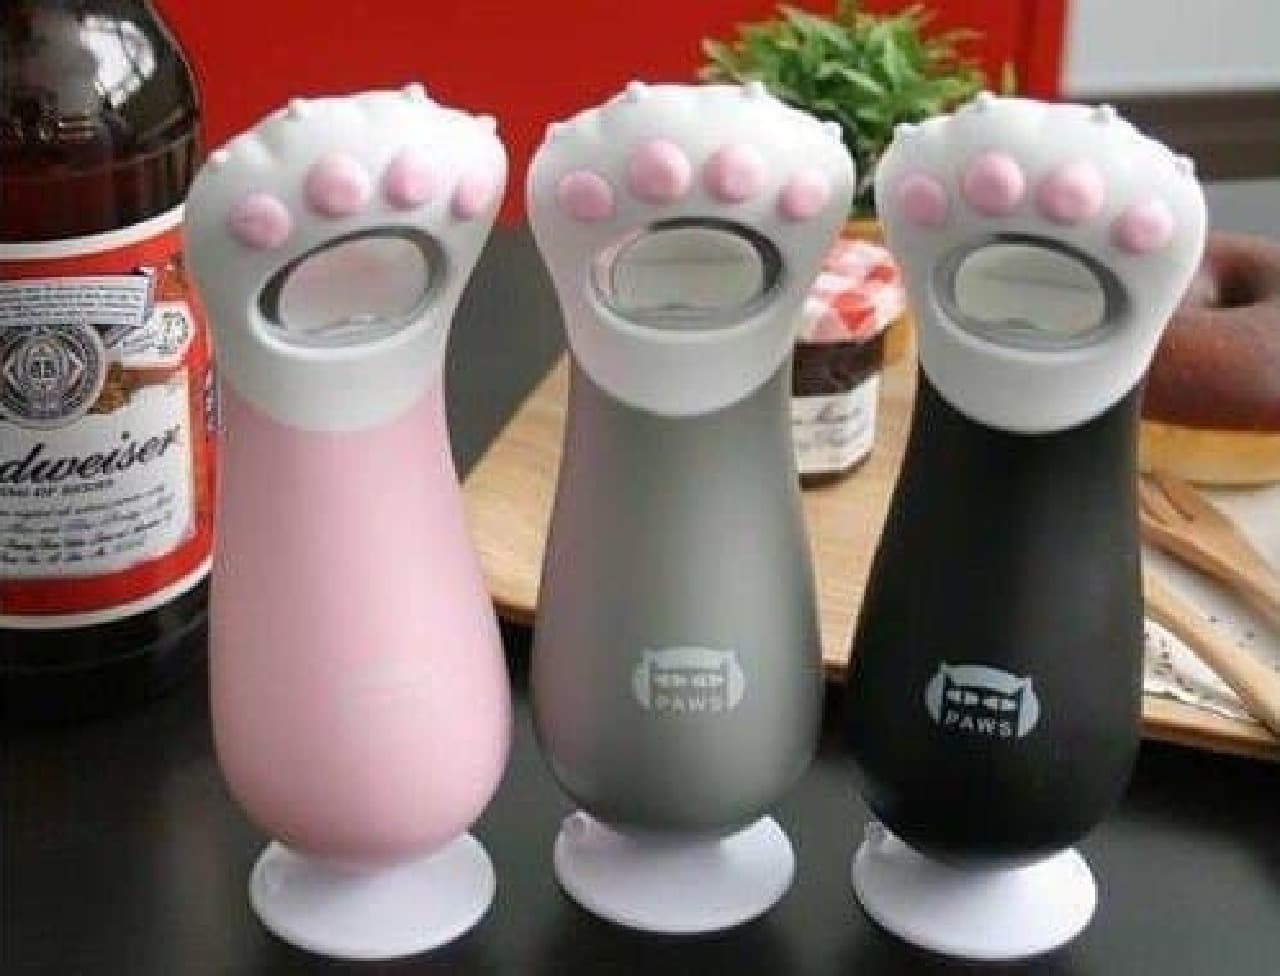 ネコの肉球栓抜き「Creative Cat Paw Beverage Opener」